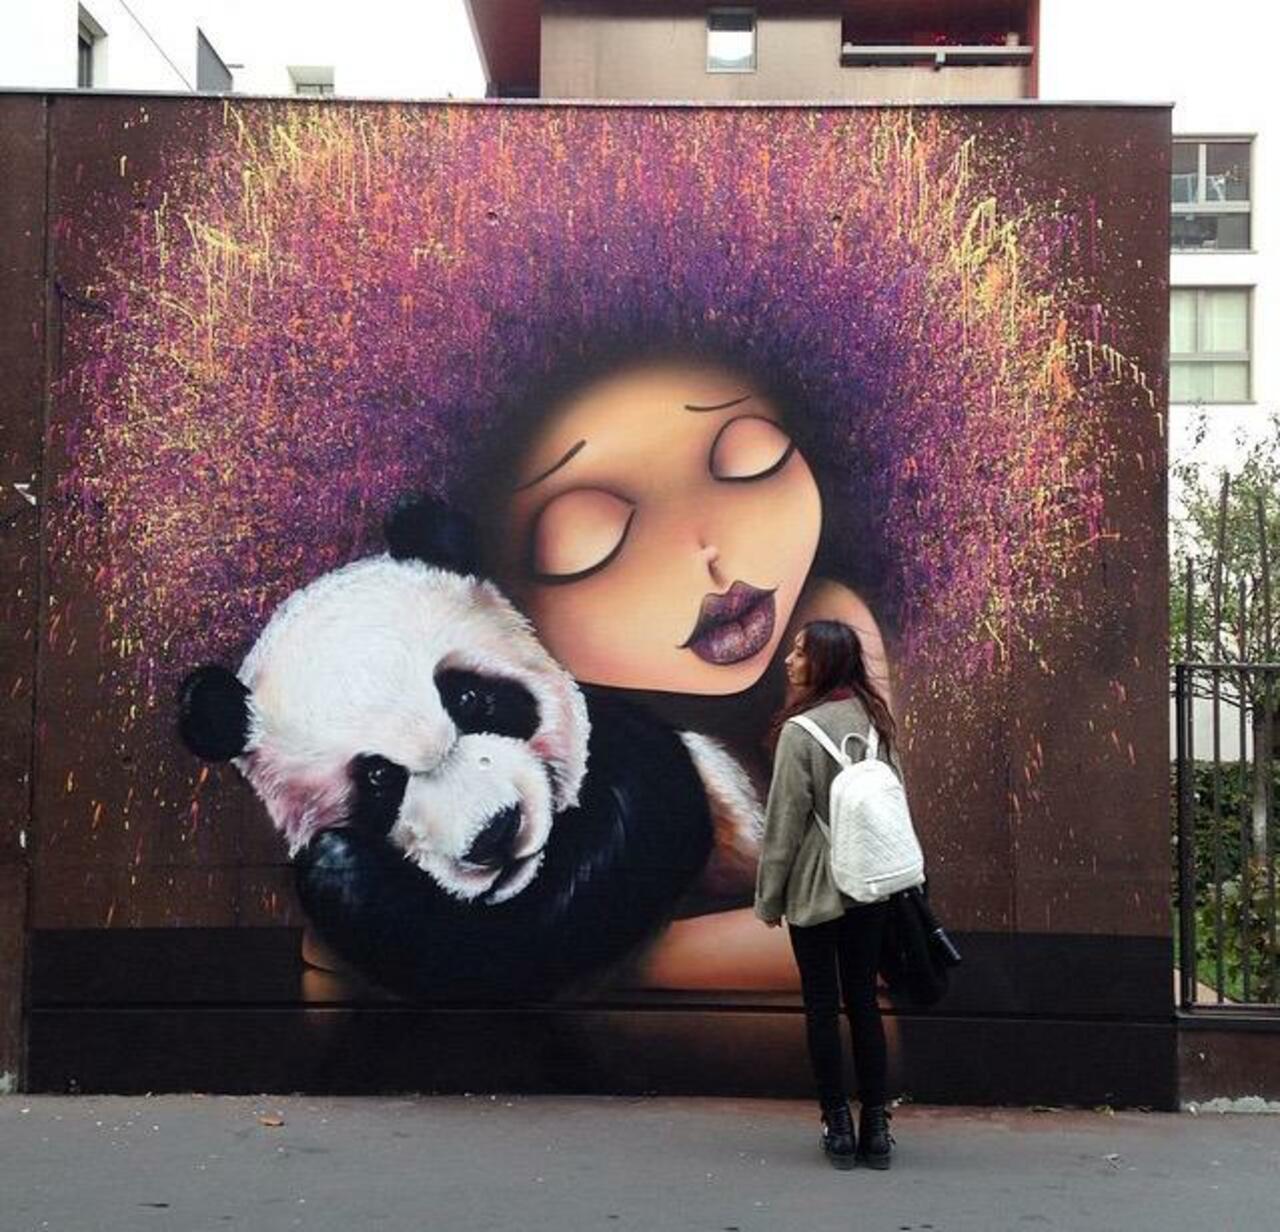 RT @GoogleStreetArt: Street Art by @VinieGraffiti in Paris 

#art #graffiti #mural #streetart http://t.co/OjmEXmttru